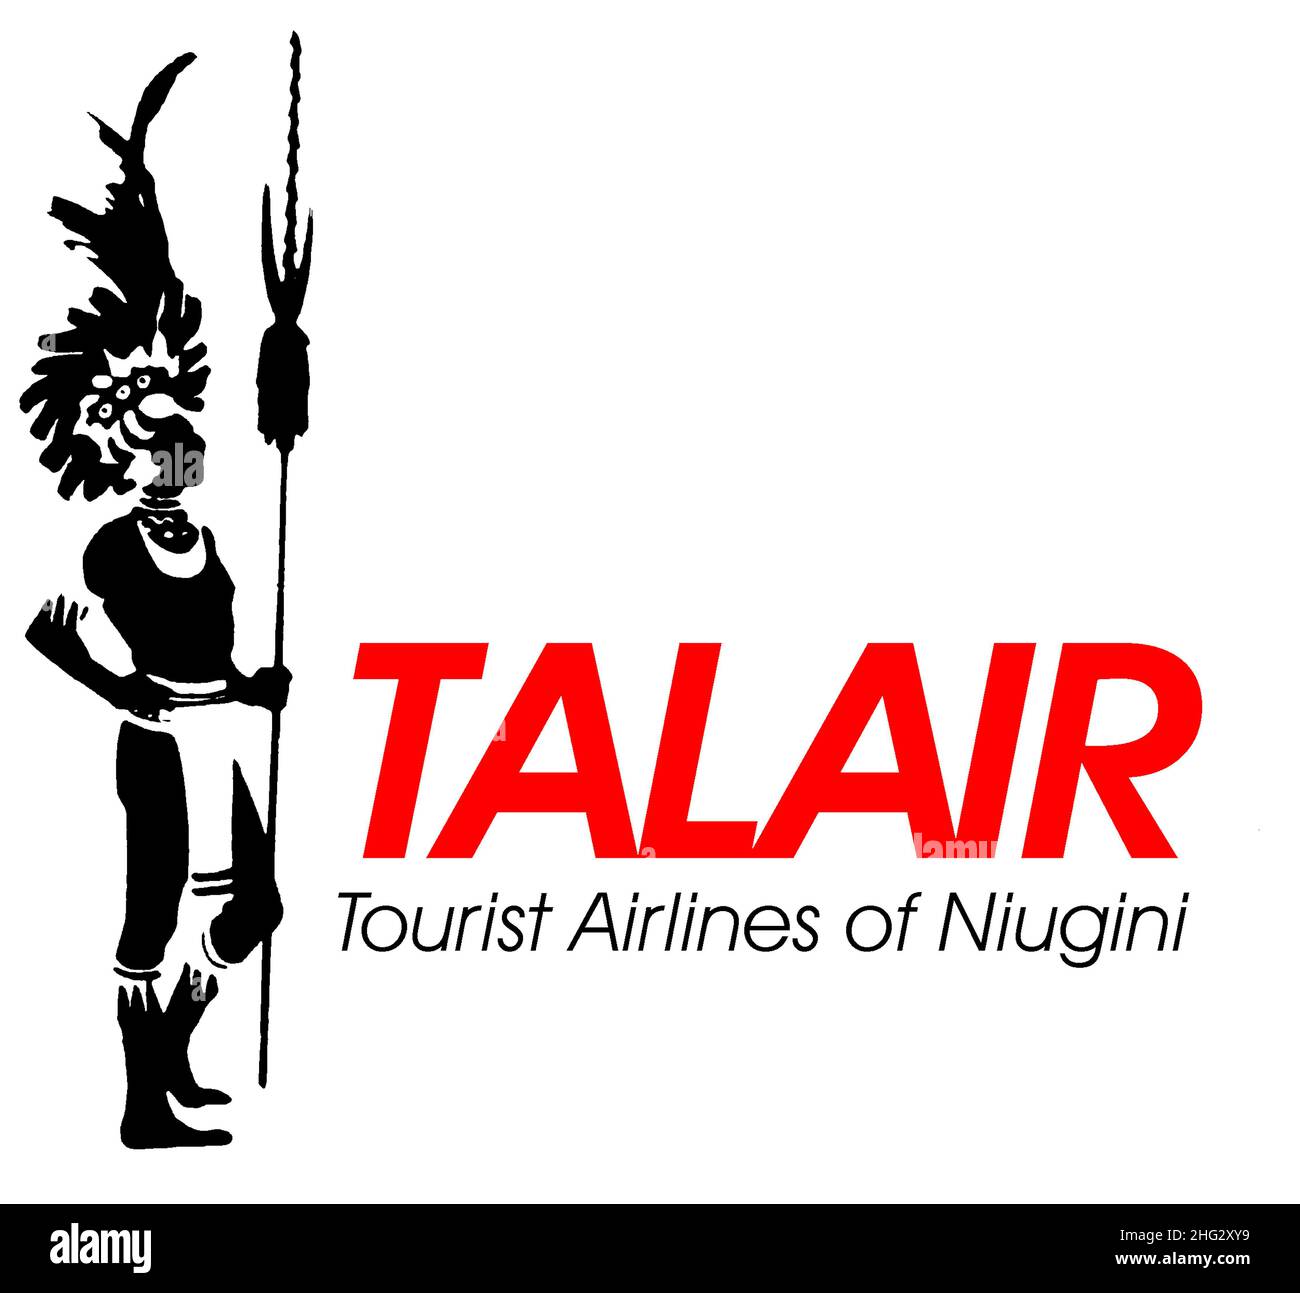 Recréation du logo Talair.La compagnie aérienne a cessé ses activités en 1993. Banque D'Images